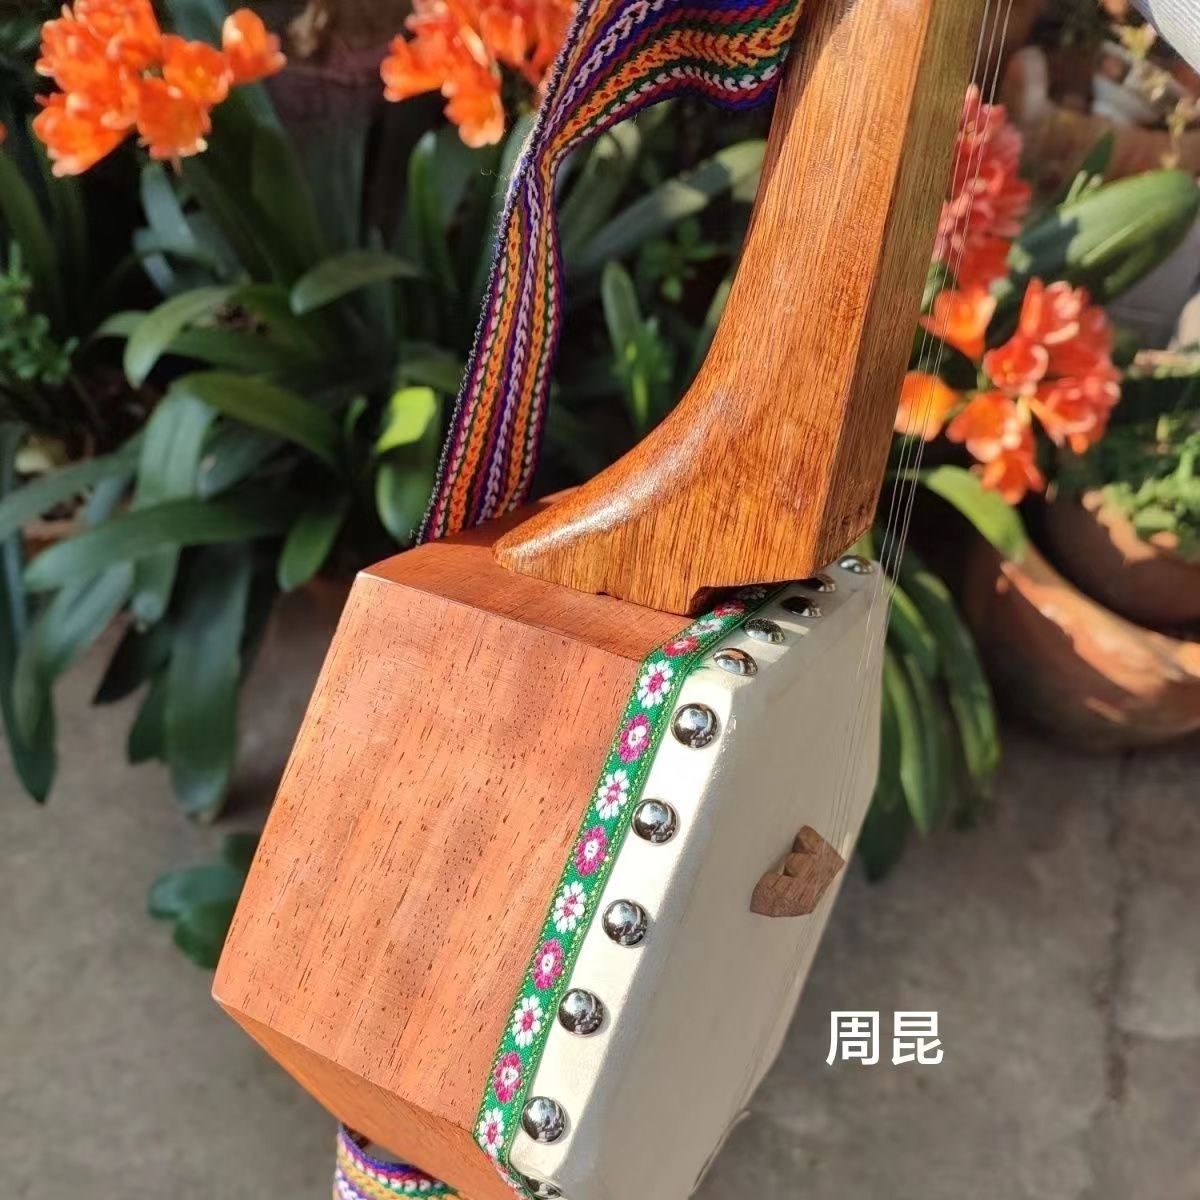 羊头琴 三弦  1米 兰坪普米族 民族乐器 非遗  厂家直销 可开发票